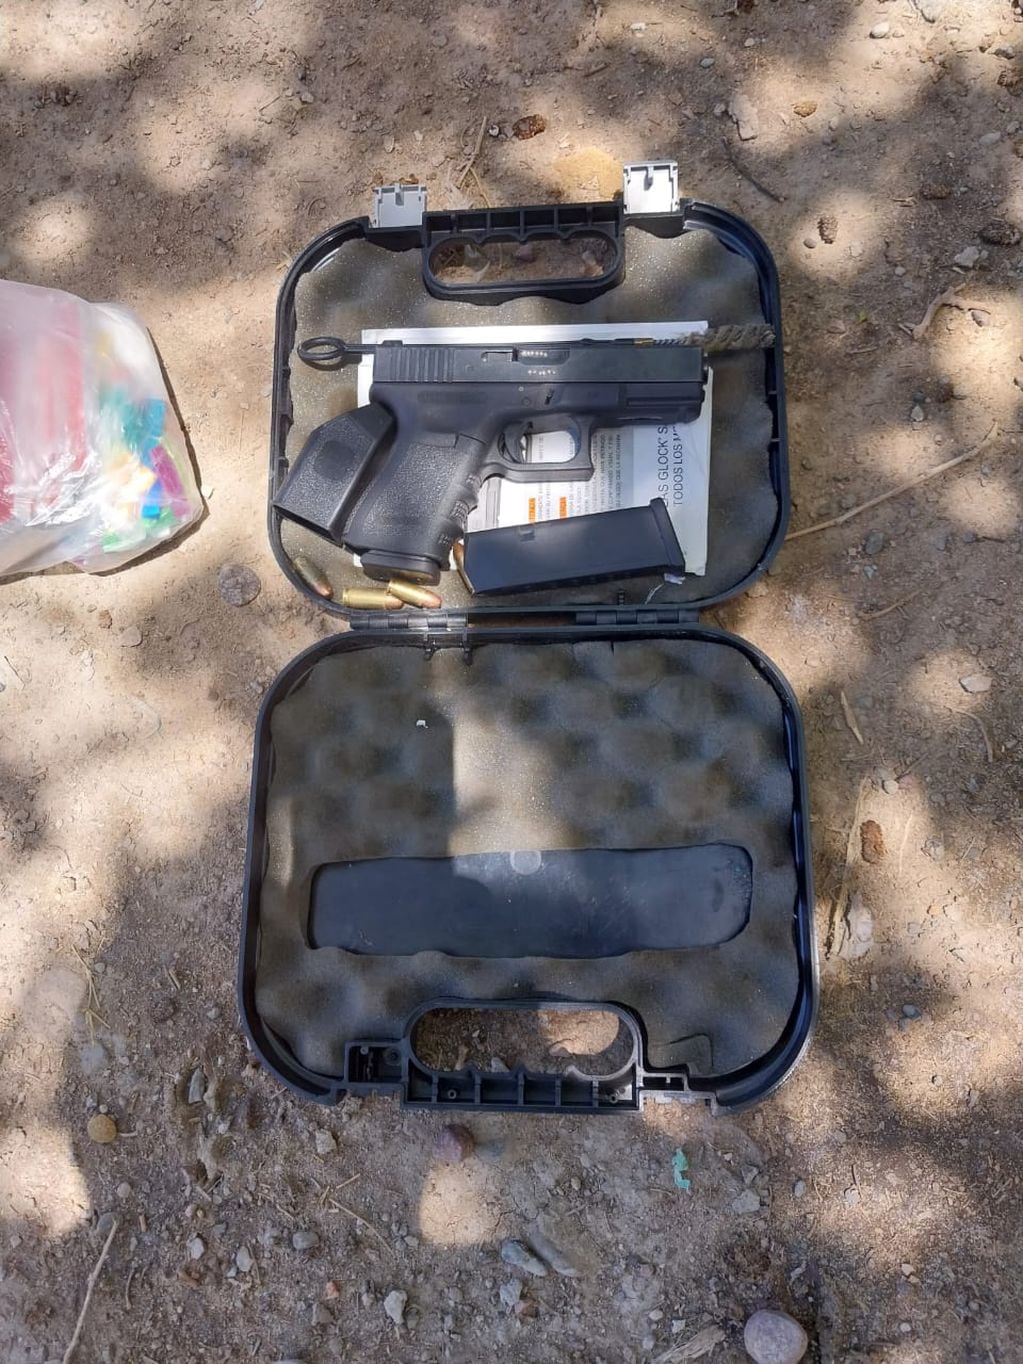 Entre las armas que encontraron había una pistola Glock 9 milímetros, con dos cargadores y 17 municiones. | Foto: Ministerio de Seguridad